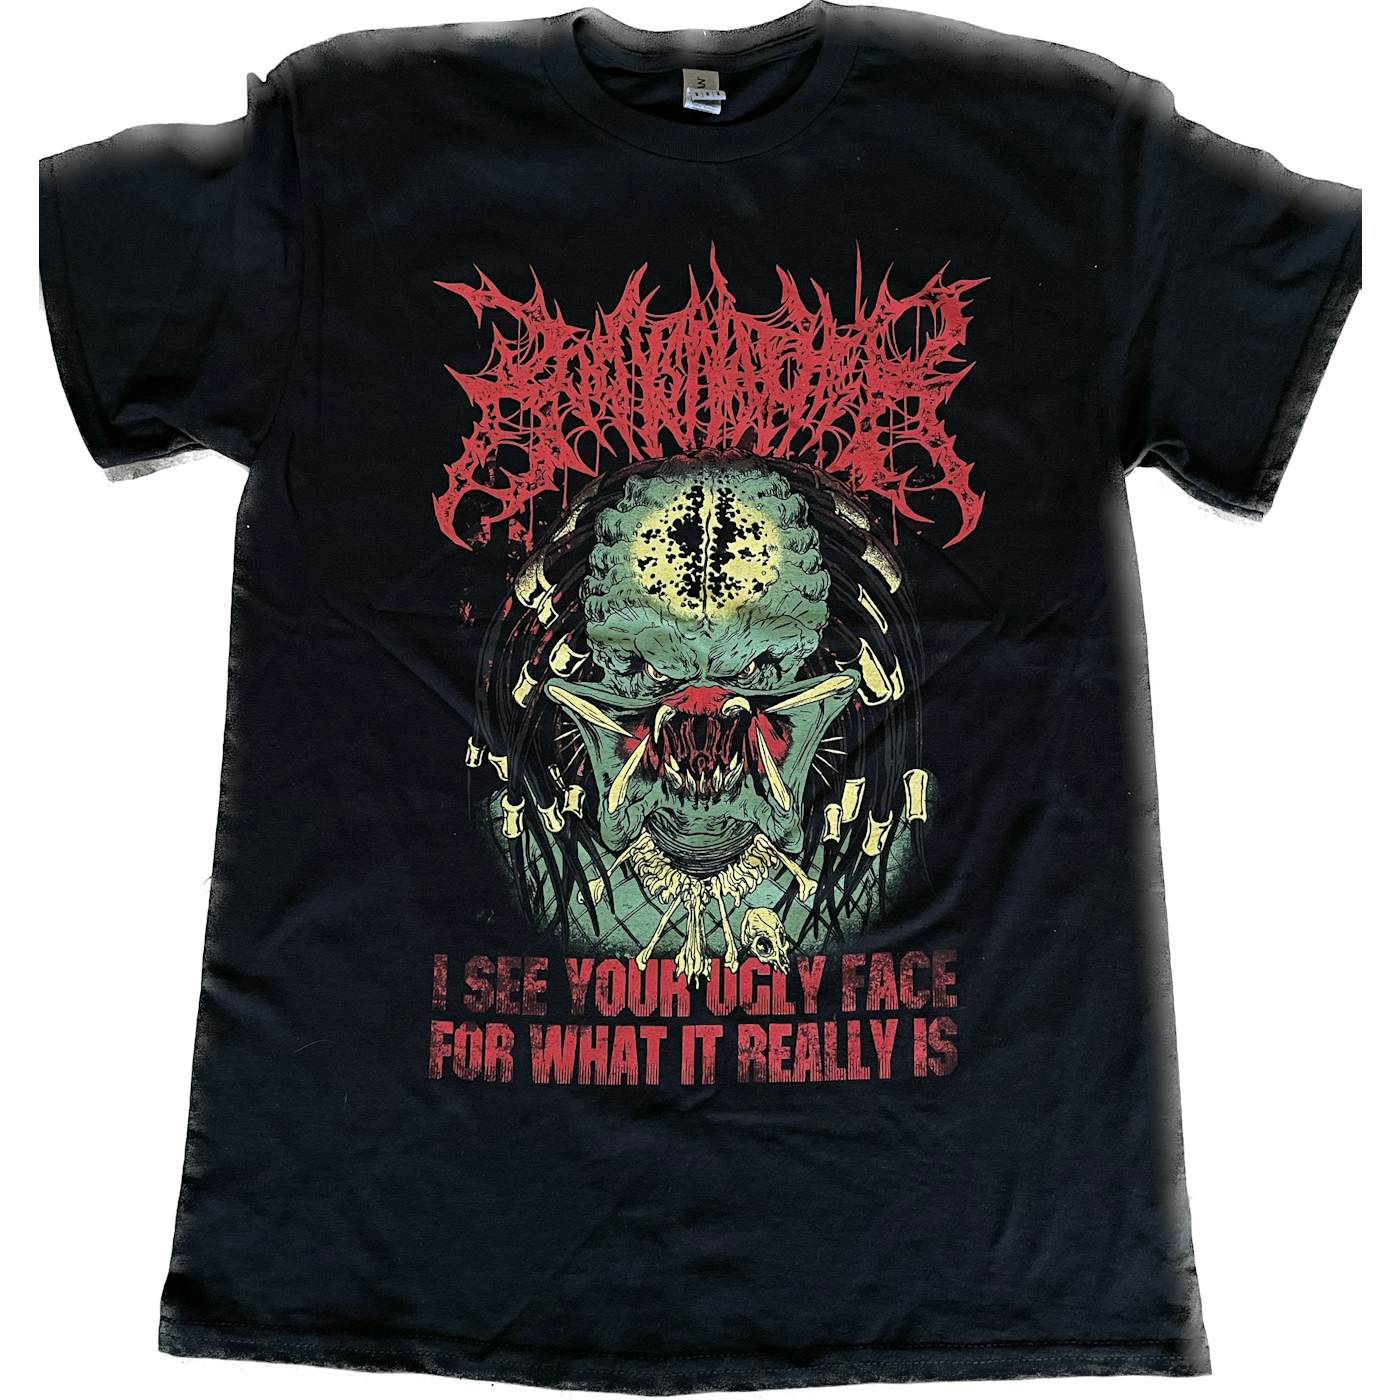 Bodysnatcher Predator T-Shirt